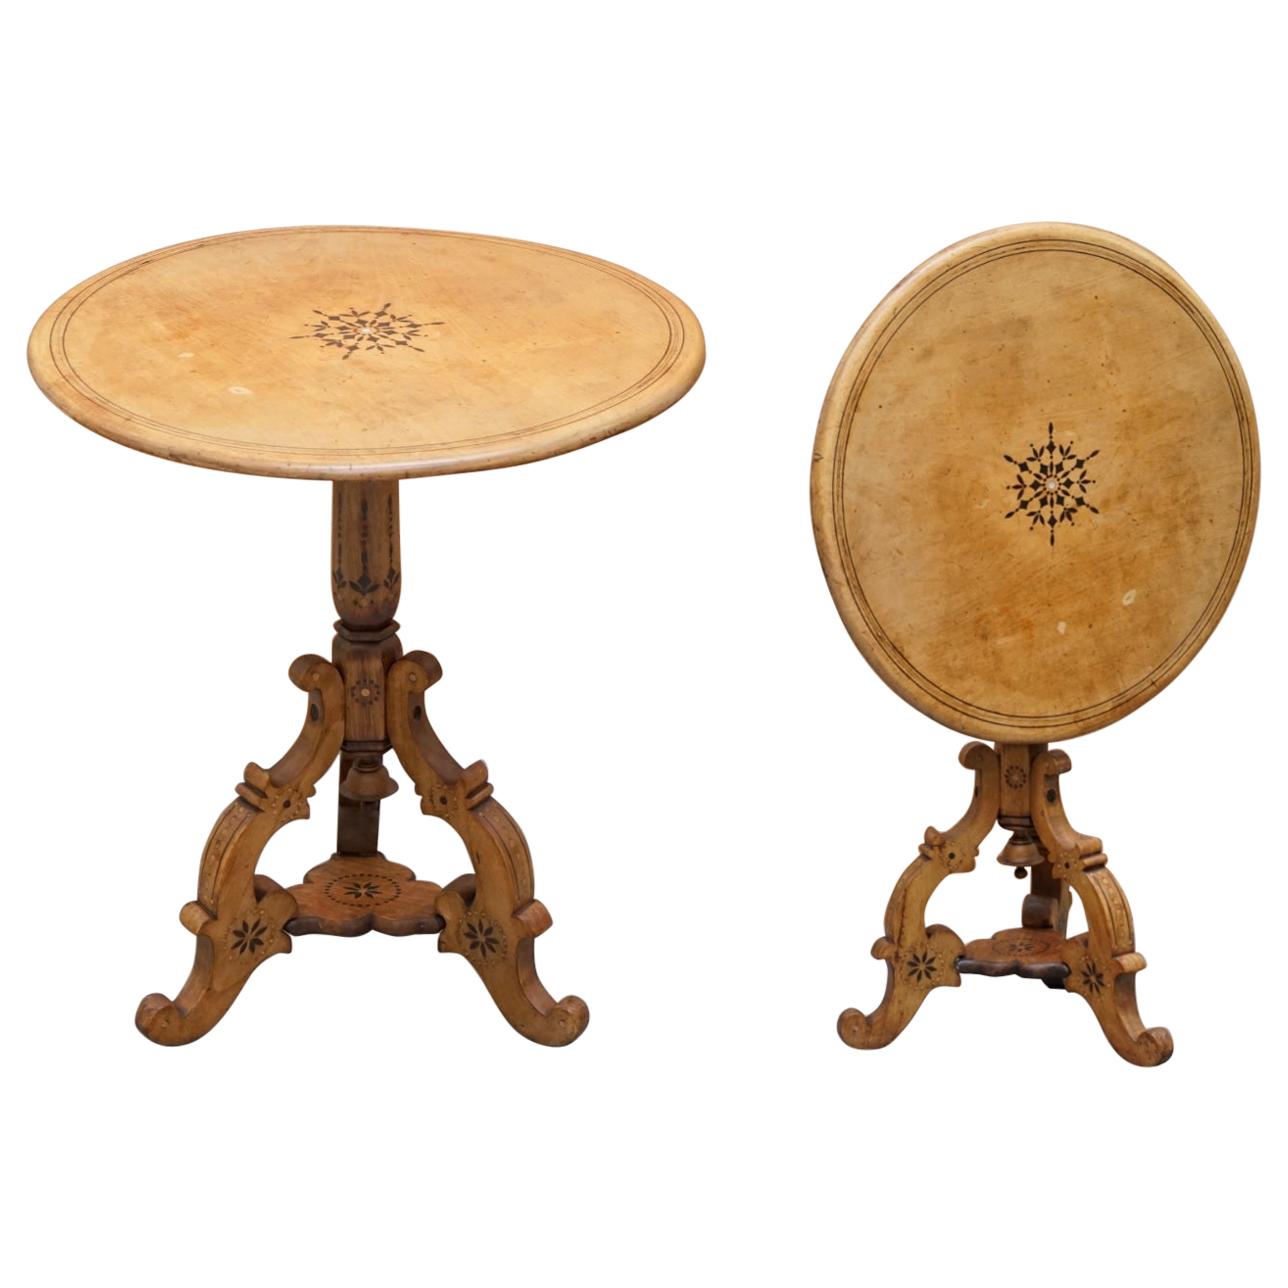 Table d'appoint ronde à plateau basculant en bois de sycomore avec incrustation de nacre de style victorien